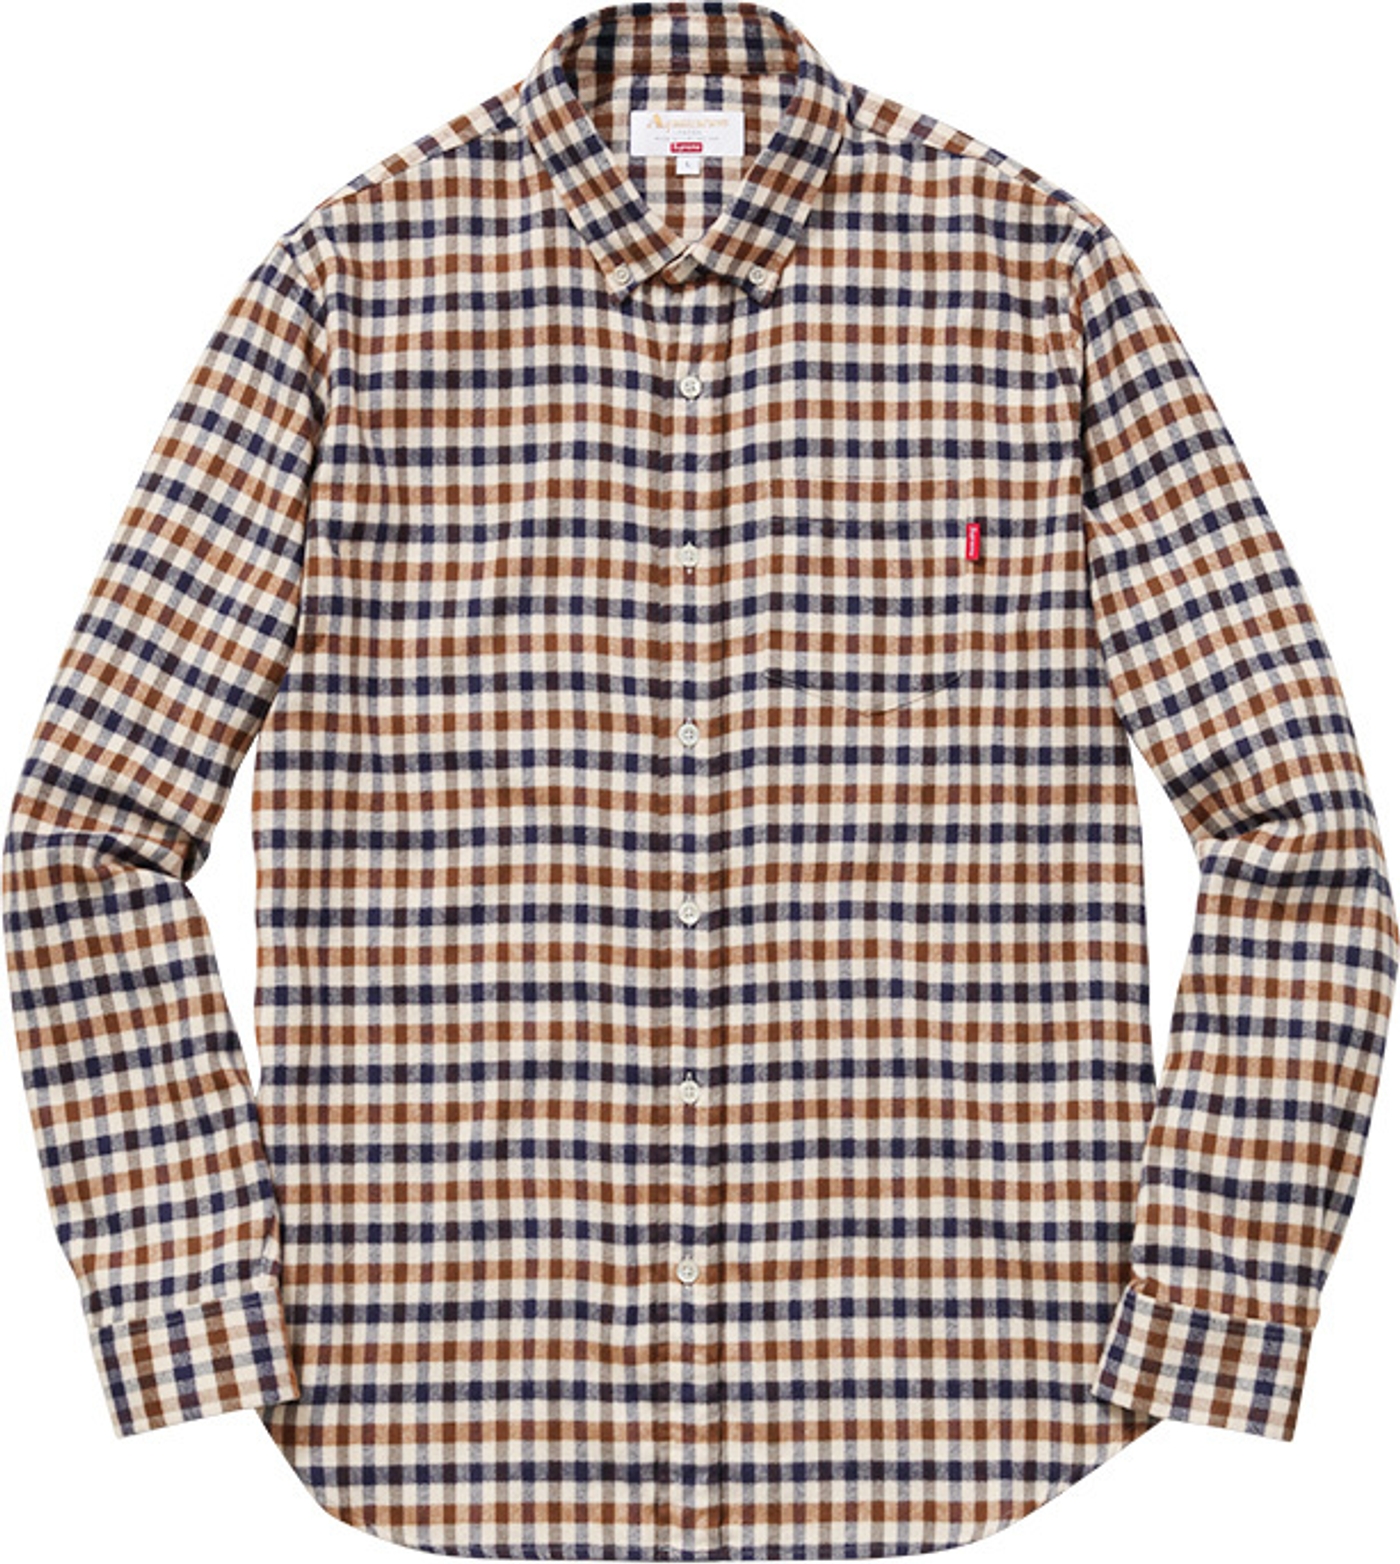 Club Check Flannel Shirt (23/25)